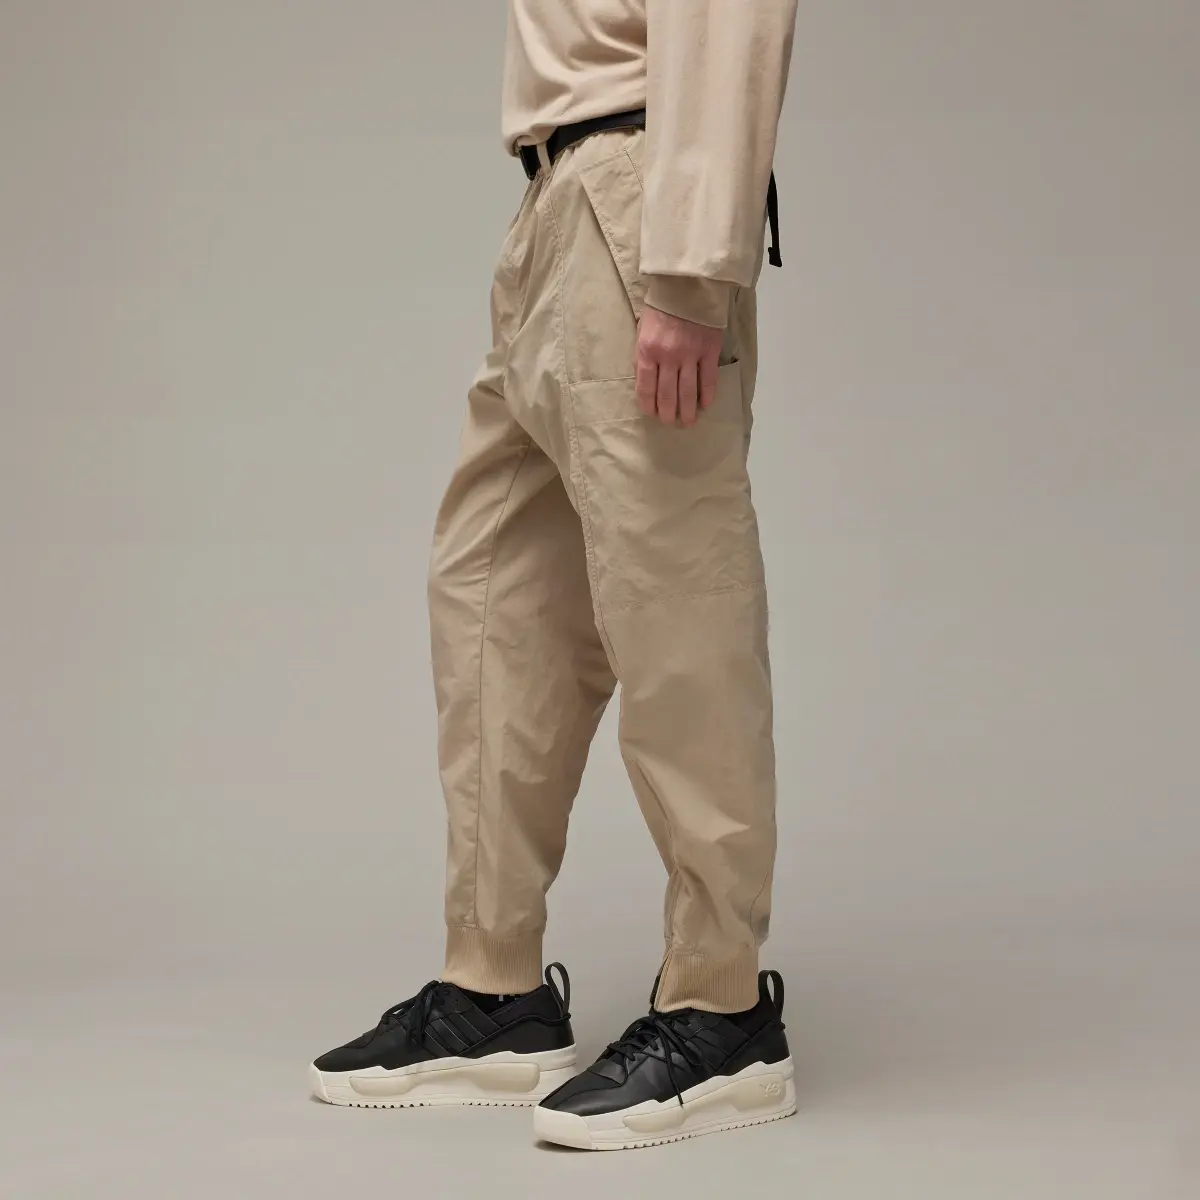 Adidas Y-3 Crinkle Nylon Cuffed Pants. 2